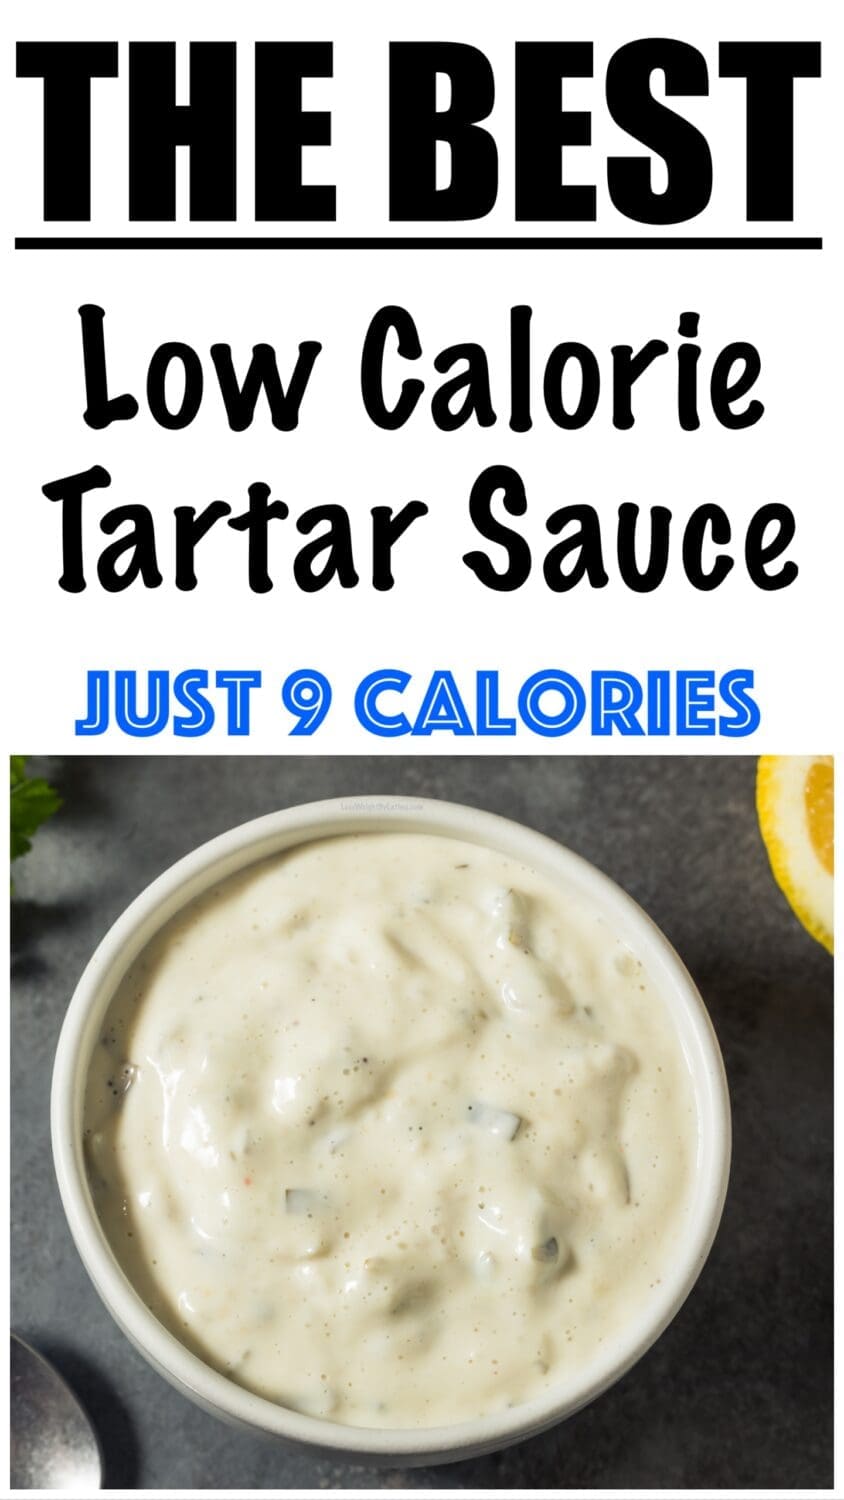 Low Calorie Tartar Sauce